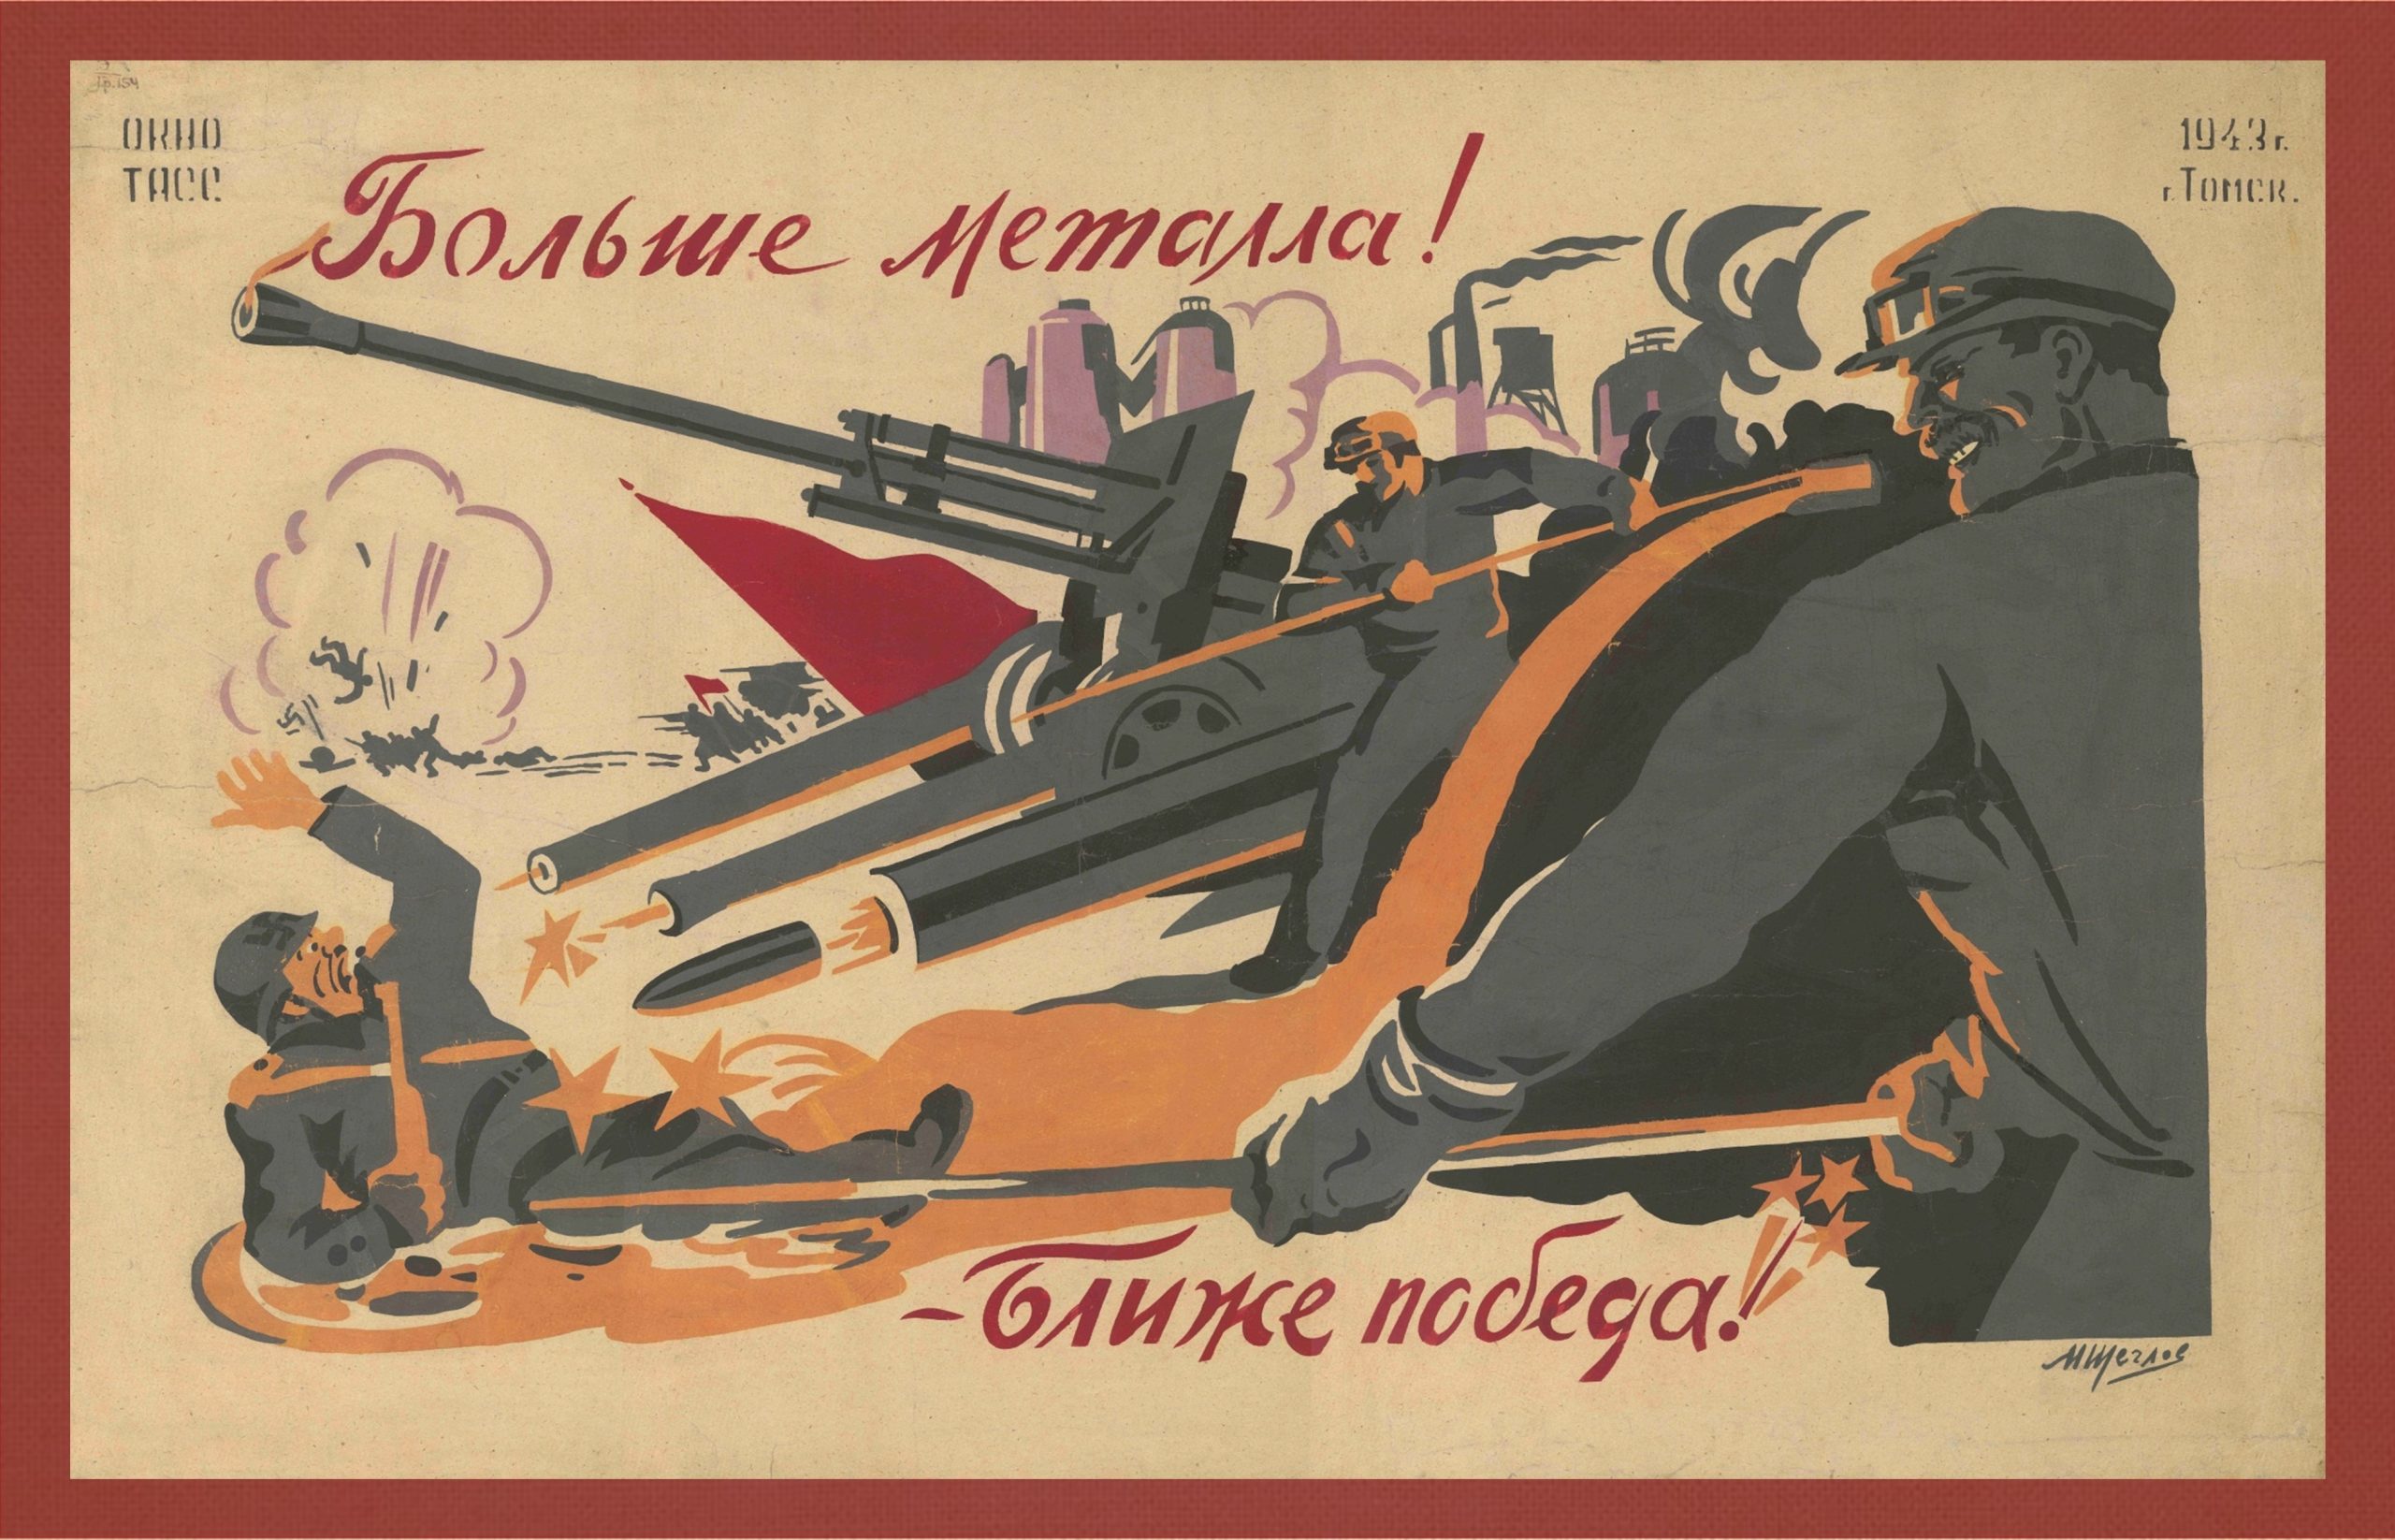 Щеглов М.М. Больше металла! Ближе победа! Советский плакат 1943 г.